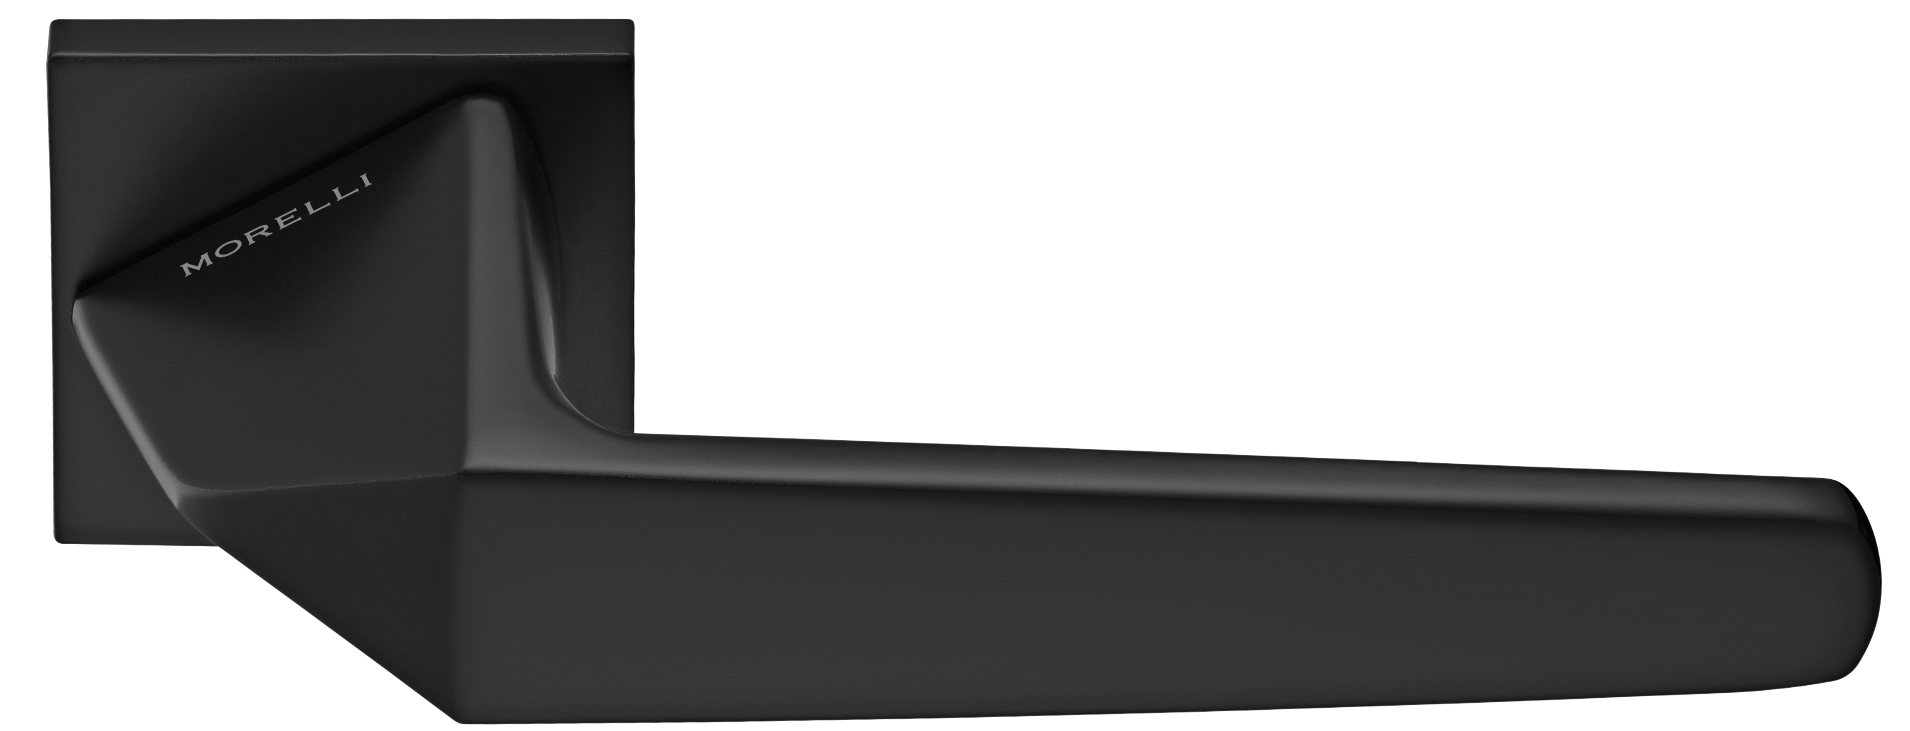 SOUK ручка дверная на квадратной розетке 6 мм, MH-55-S6 BL, цвет - черный фото купить Омск